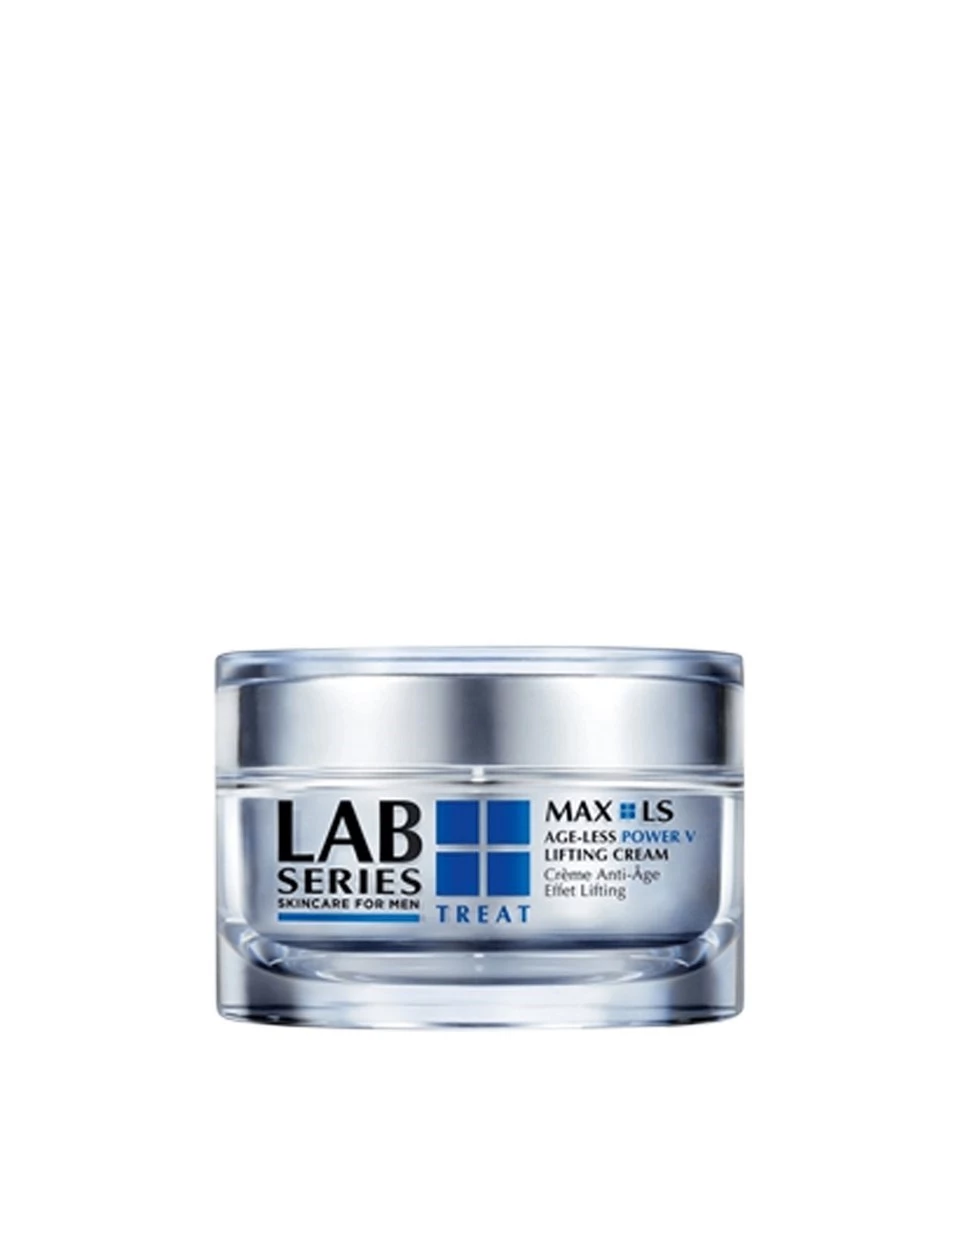 Lab Series Max LS Age-Less Power V Lifting Cream 7 ml